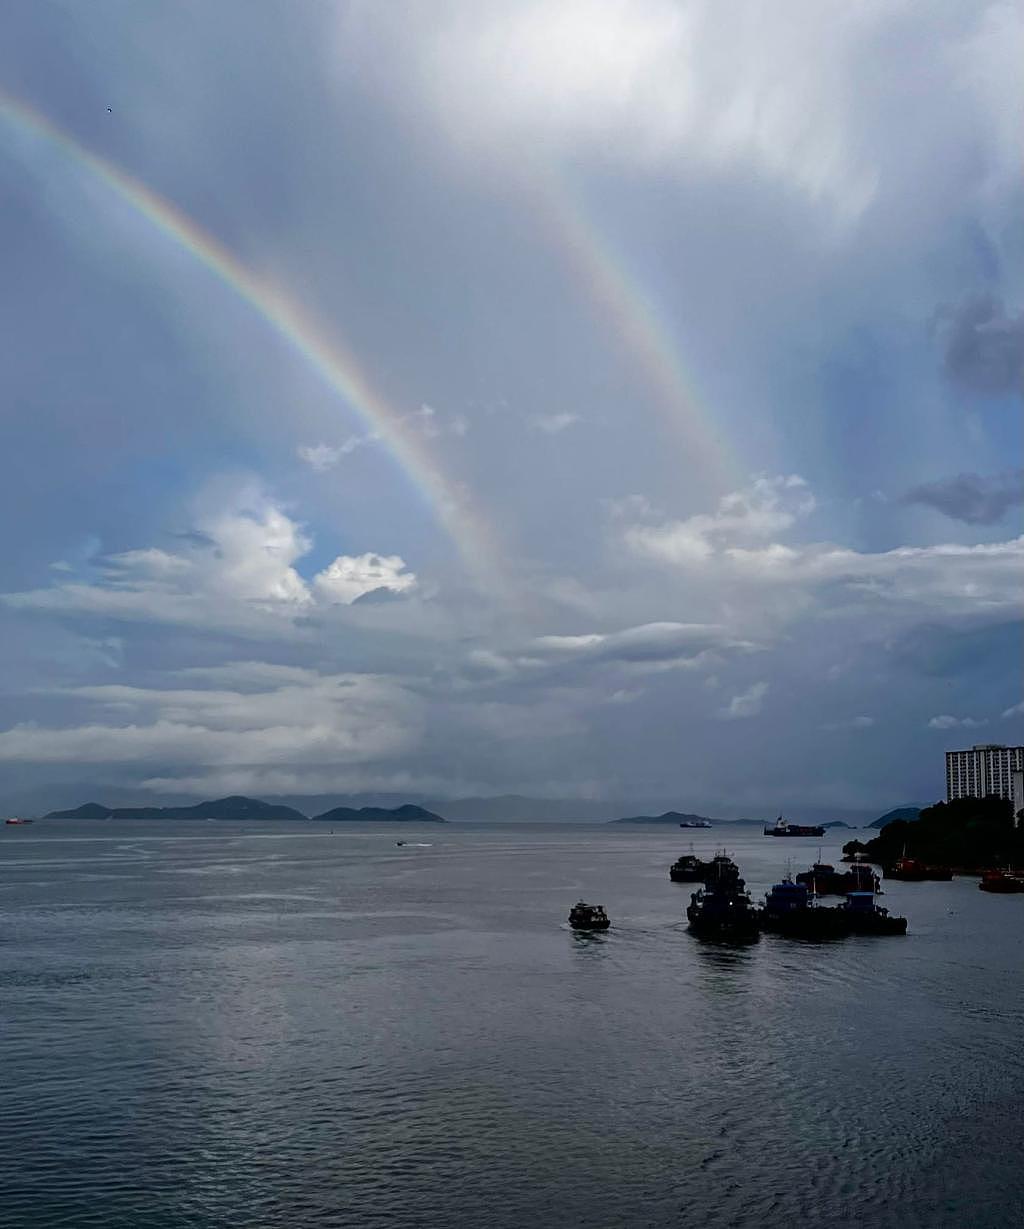 本港多处今早出现双彩虹美景。 fb「社区天气观测计划CWOS」Siul Tung图片